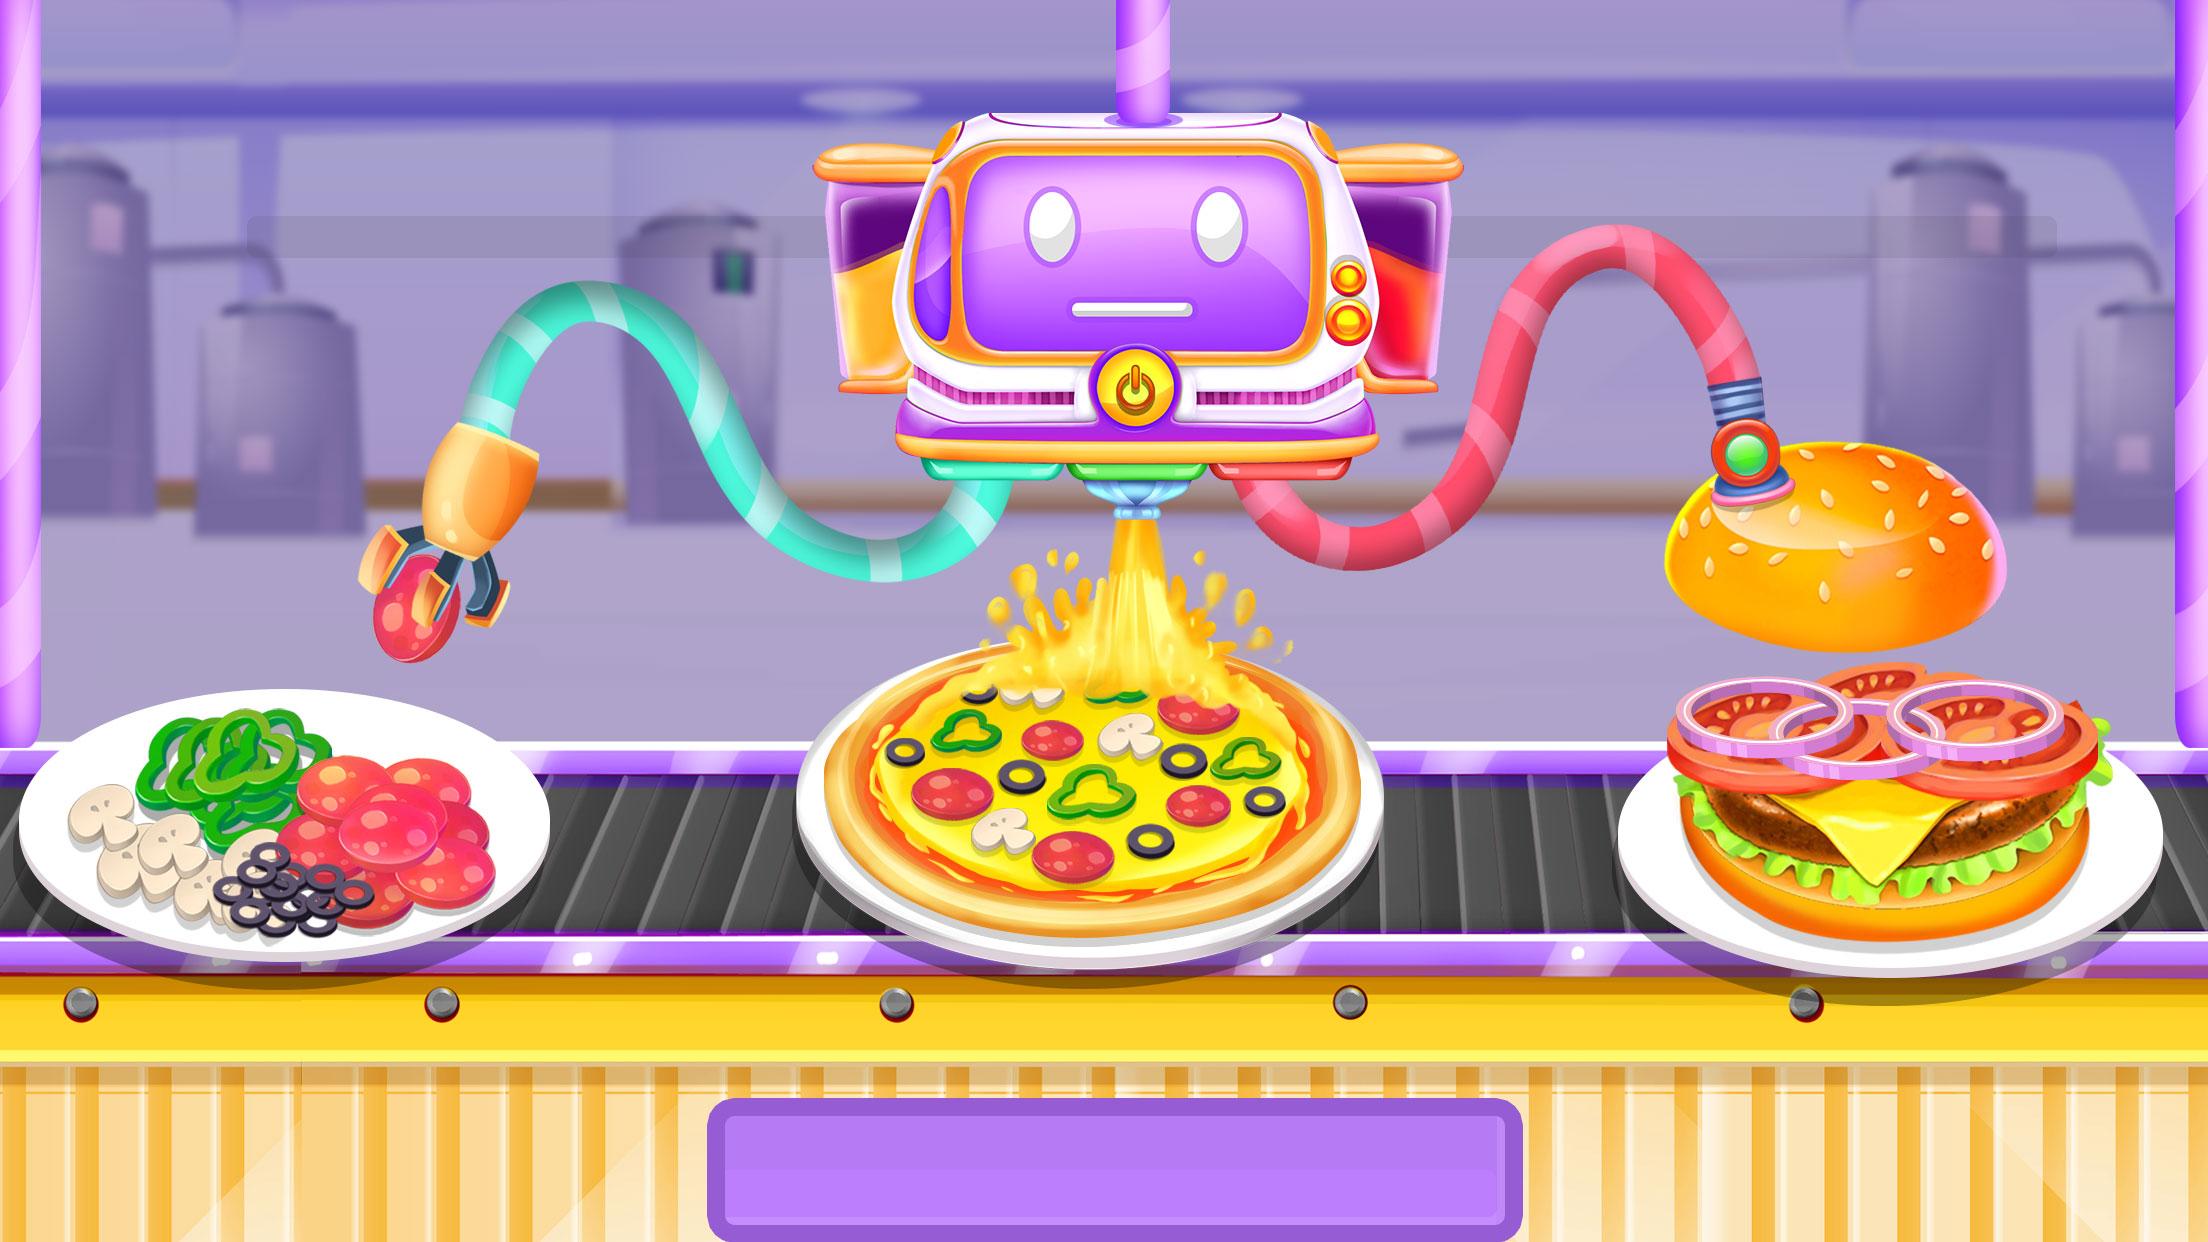 игра печем пиццу скачать полная версия фото 106